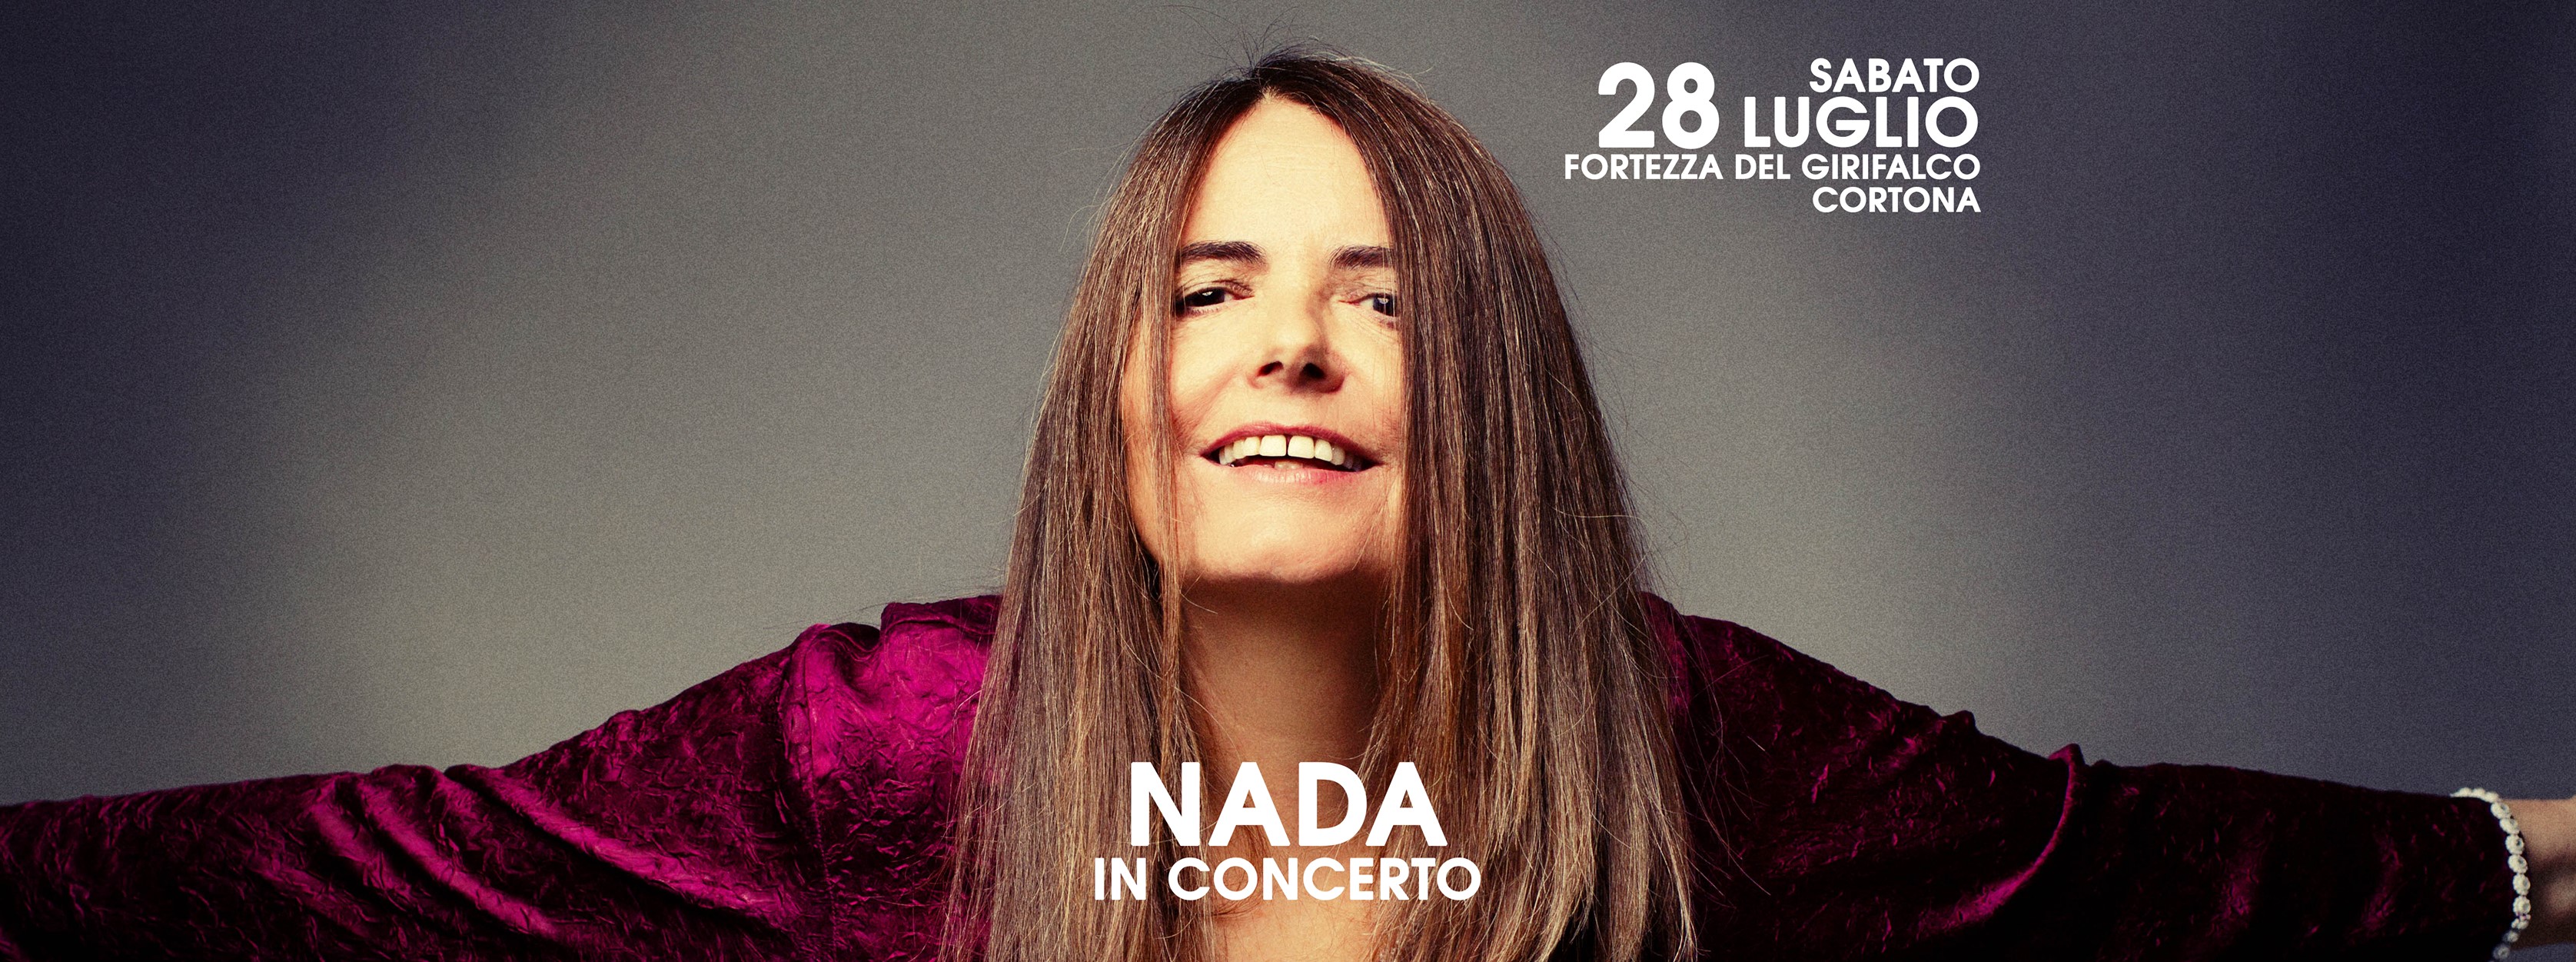 NADA in concerto per 'Fortezza Summer Festival 2018'